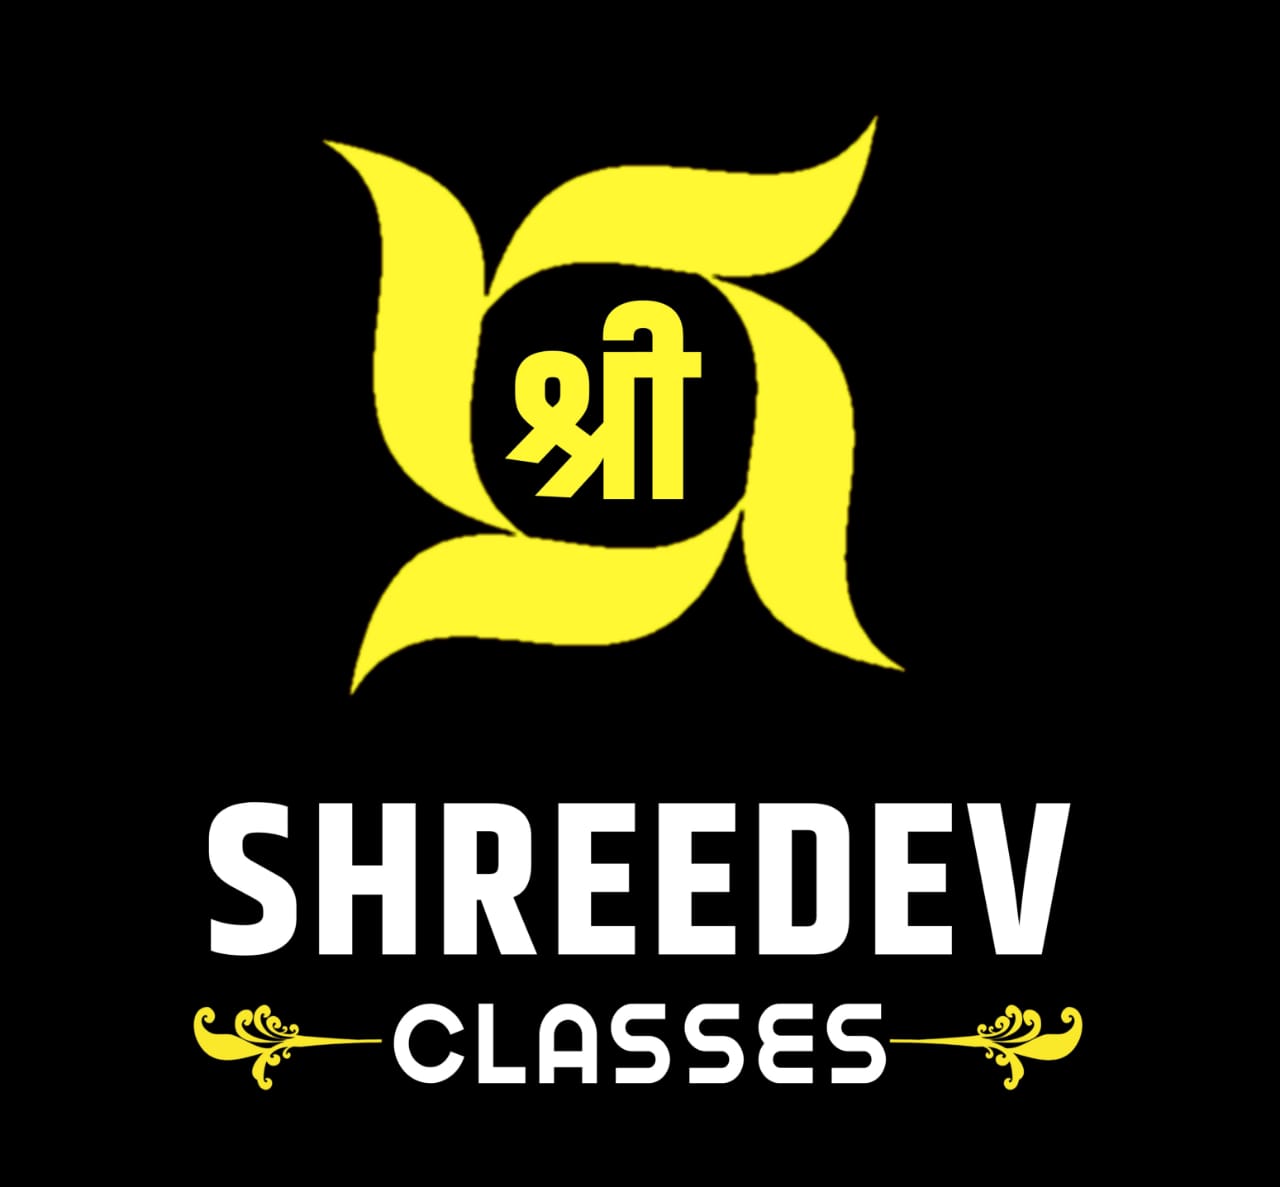  Shree Dev Classes